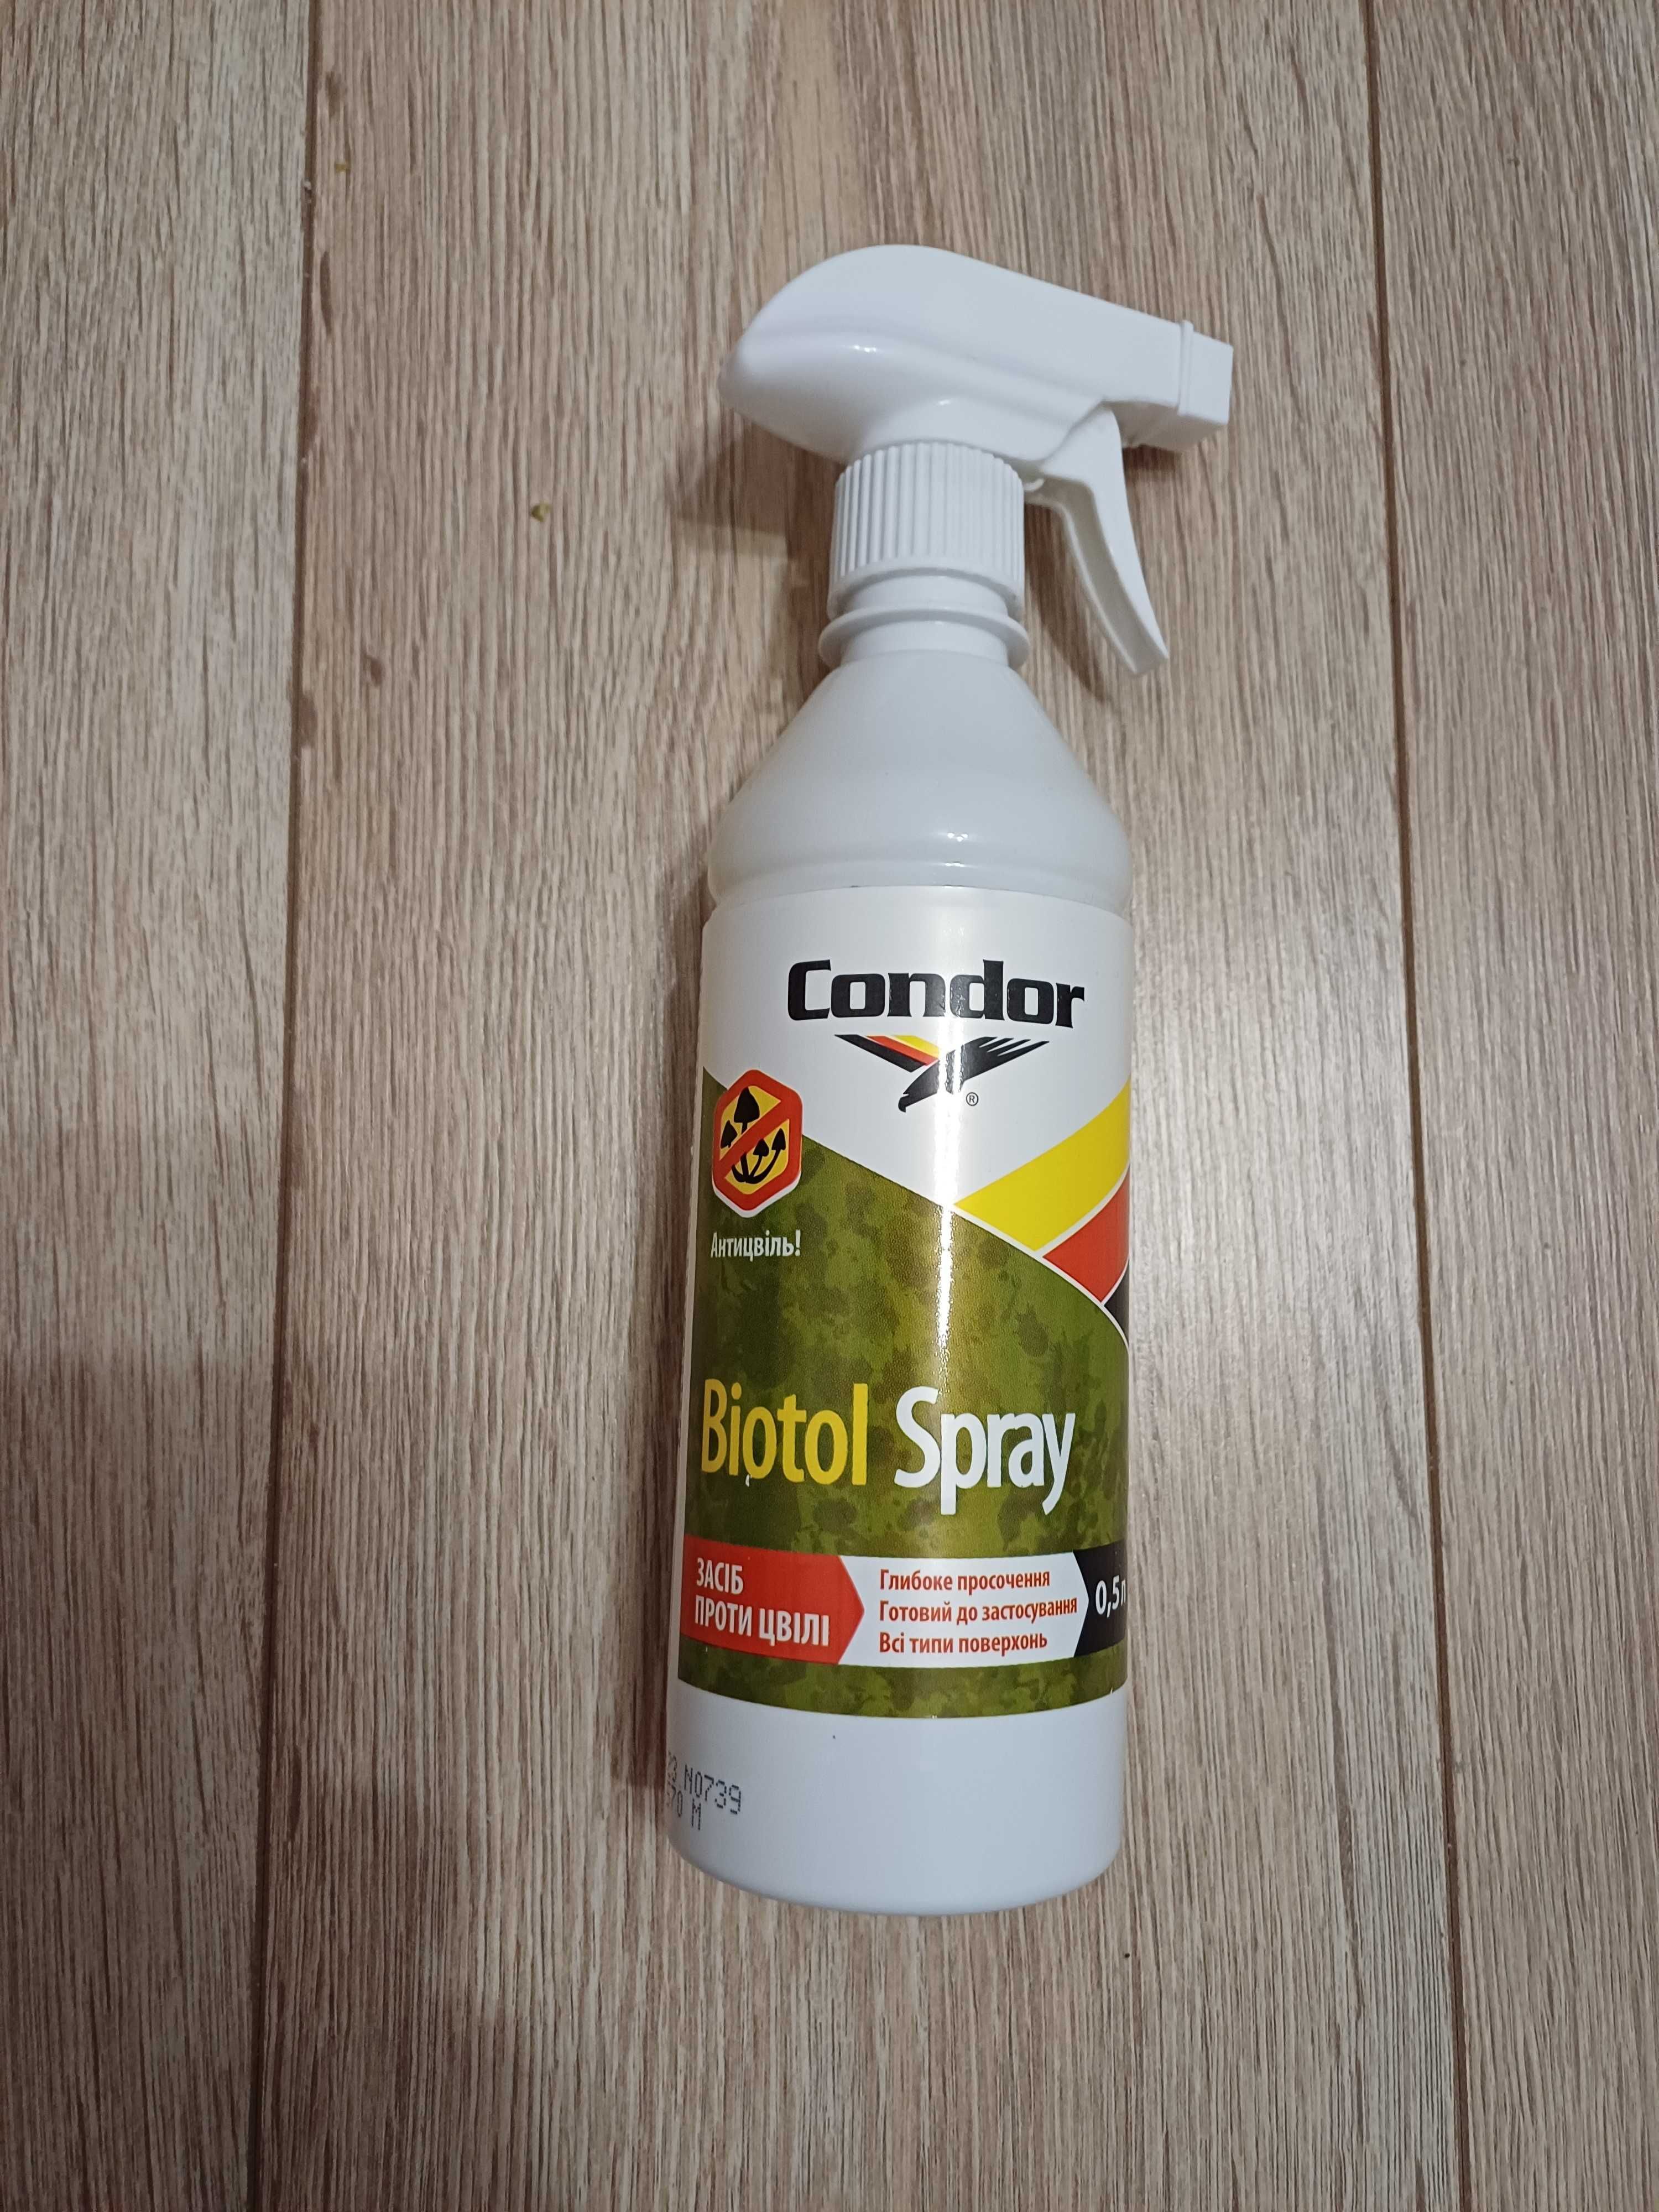 Condor Biotol Spray. Средство против плесени, мхов, водорослей и др.